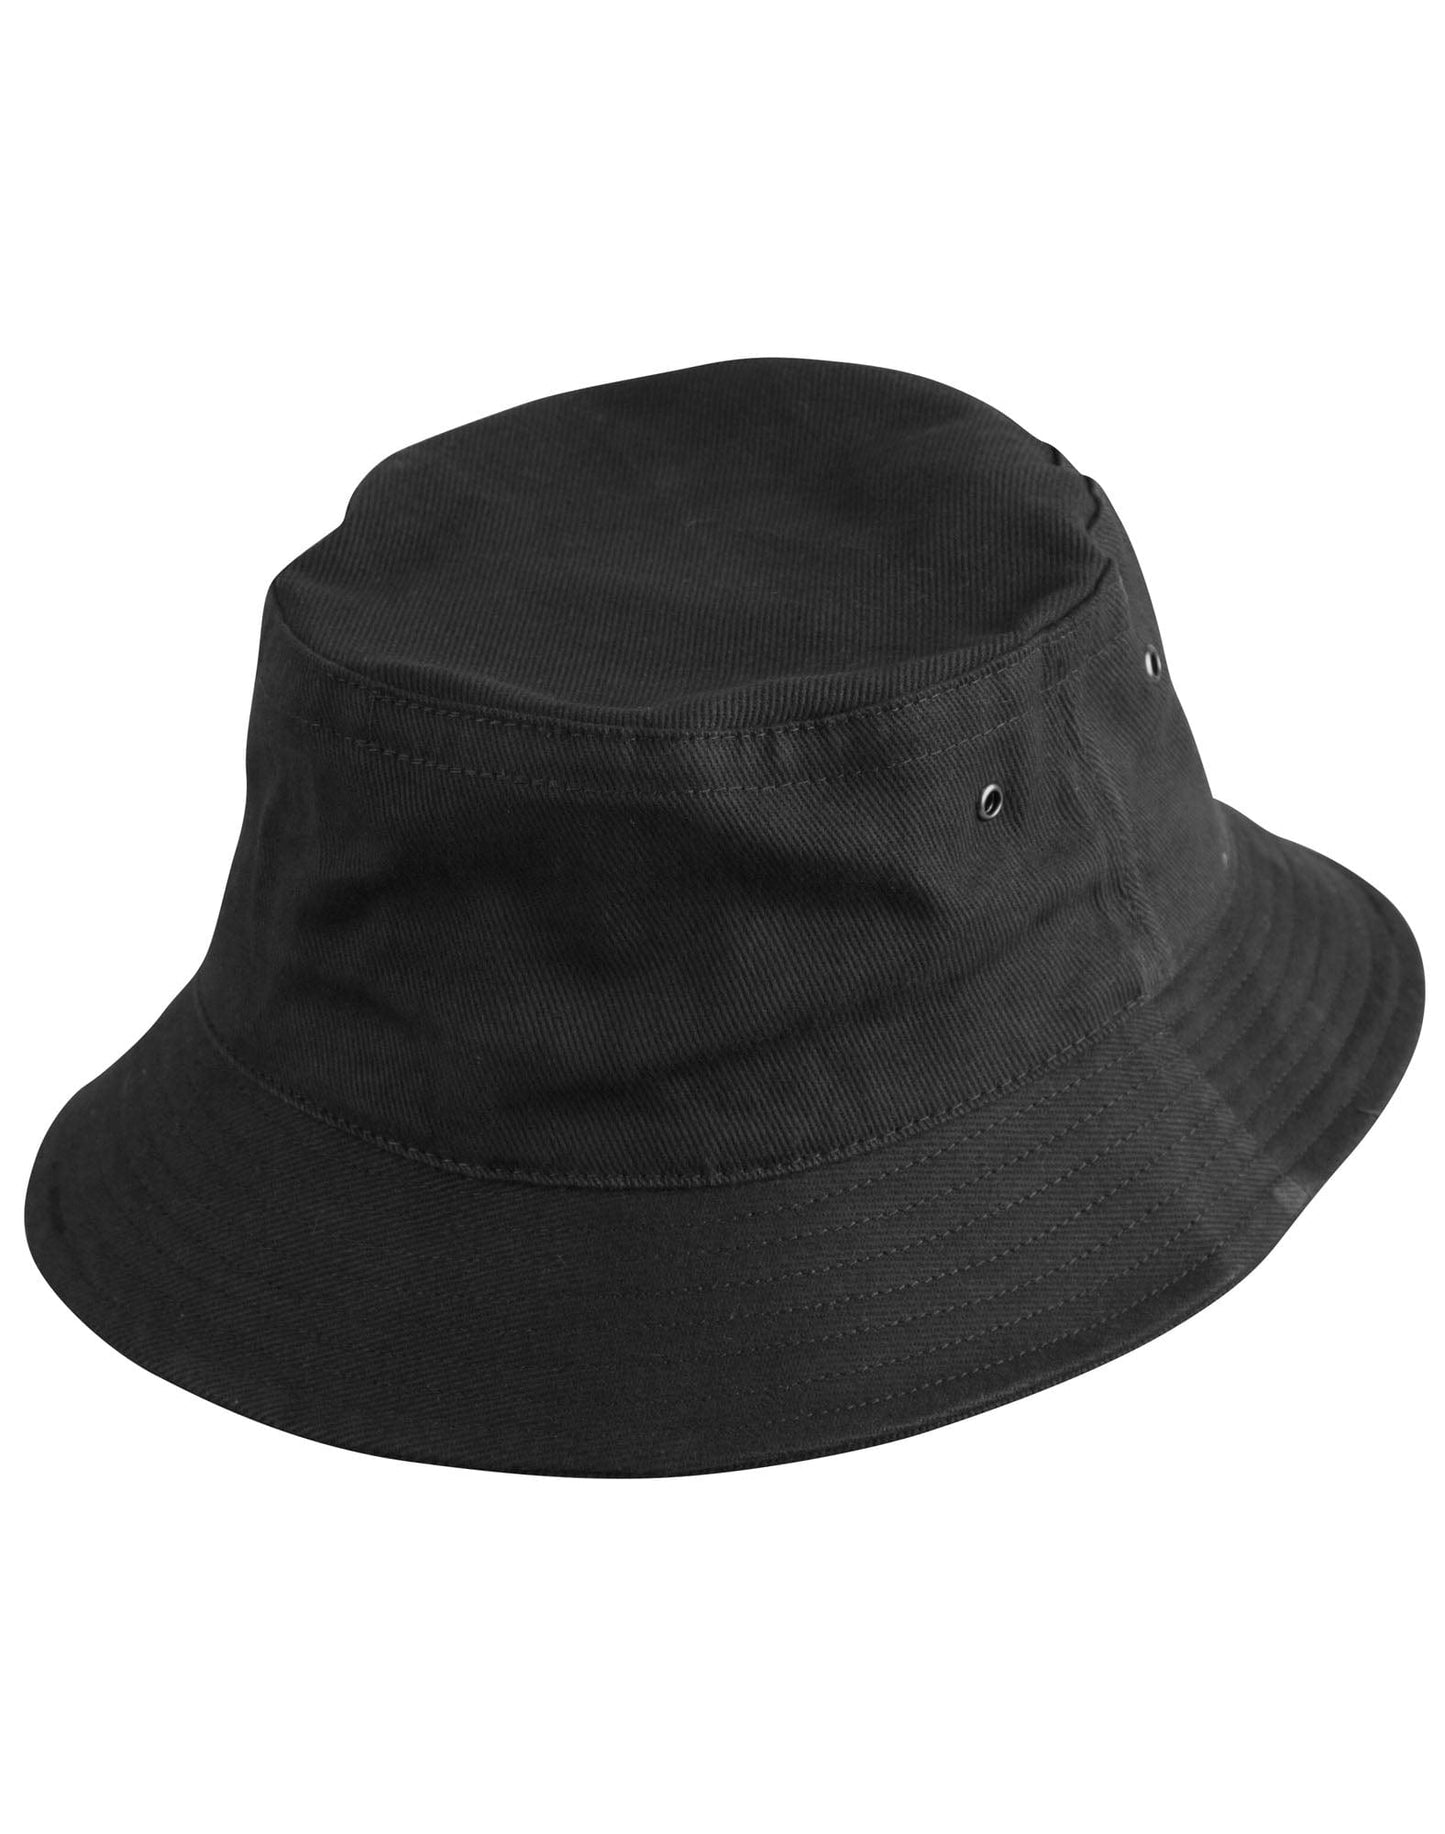 New Zealand Ngapuhi Soft Cotton Bucket Hat